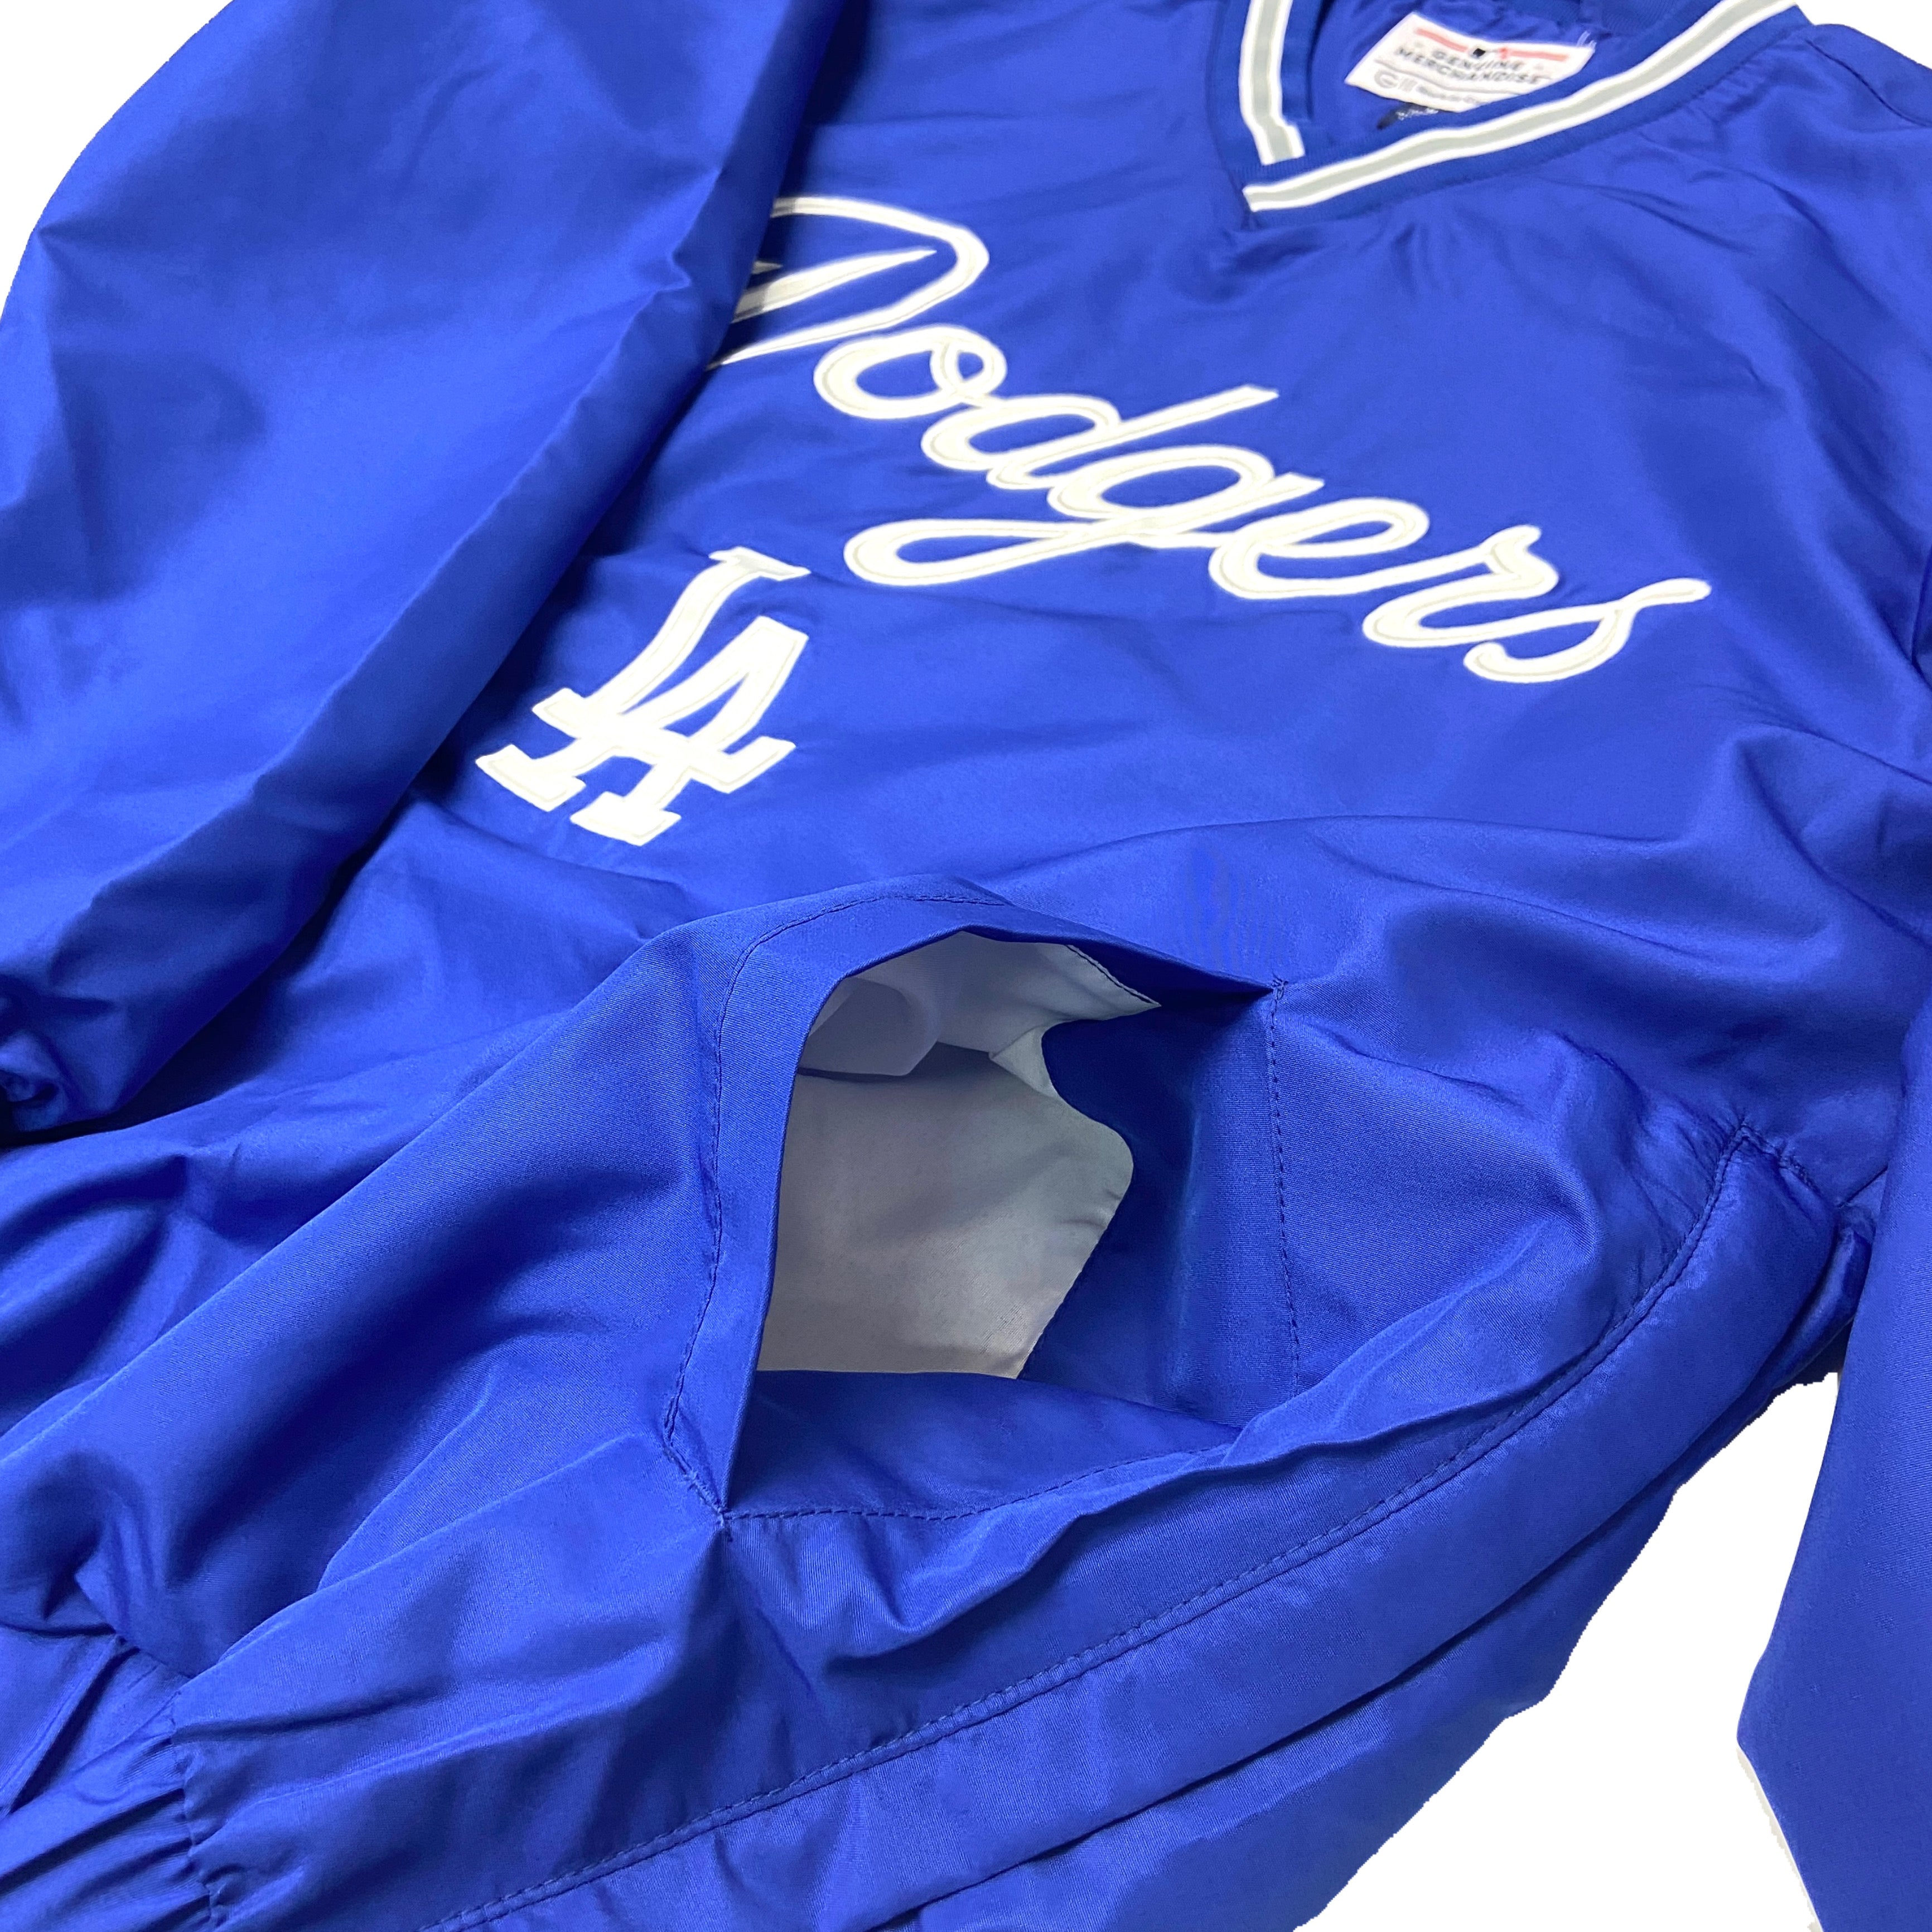 Los Angeles Dodgers MLB Fan Jerseys for sale